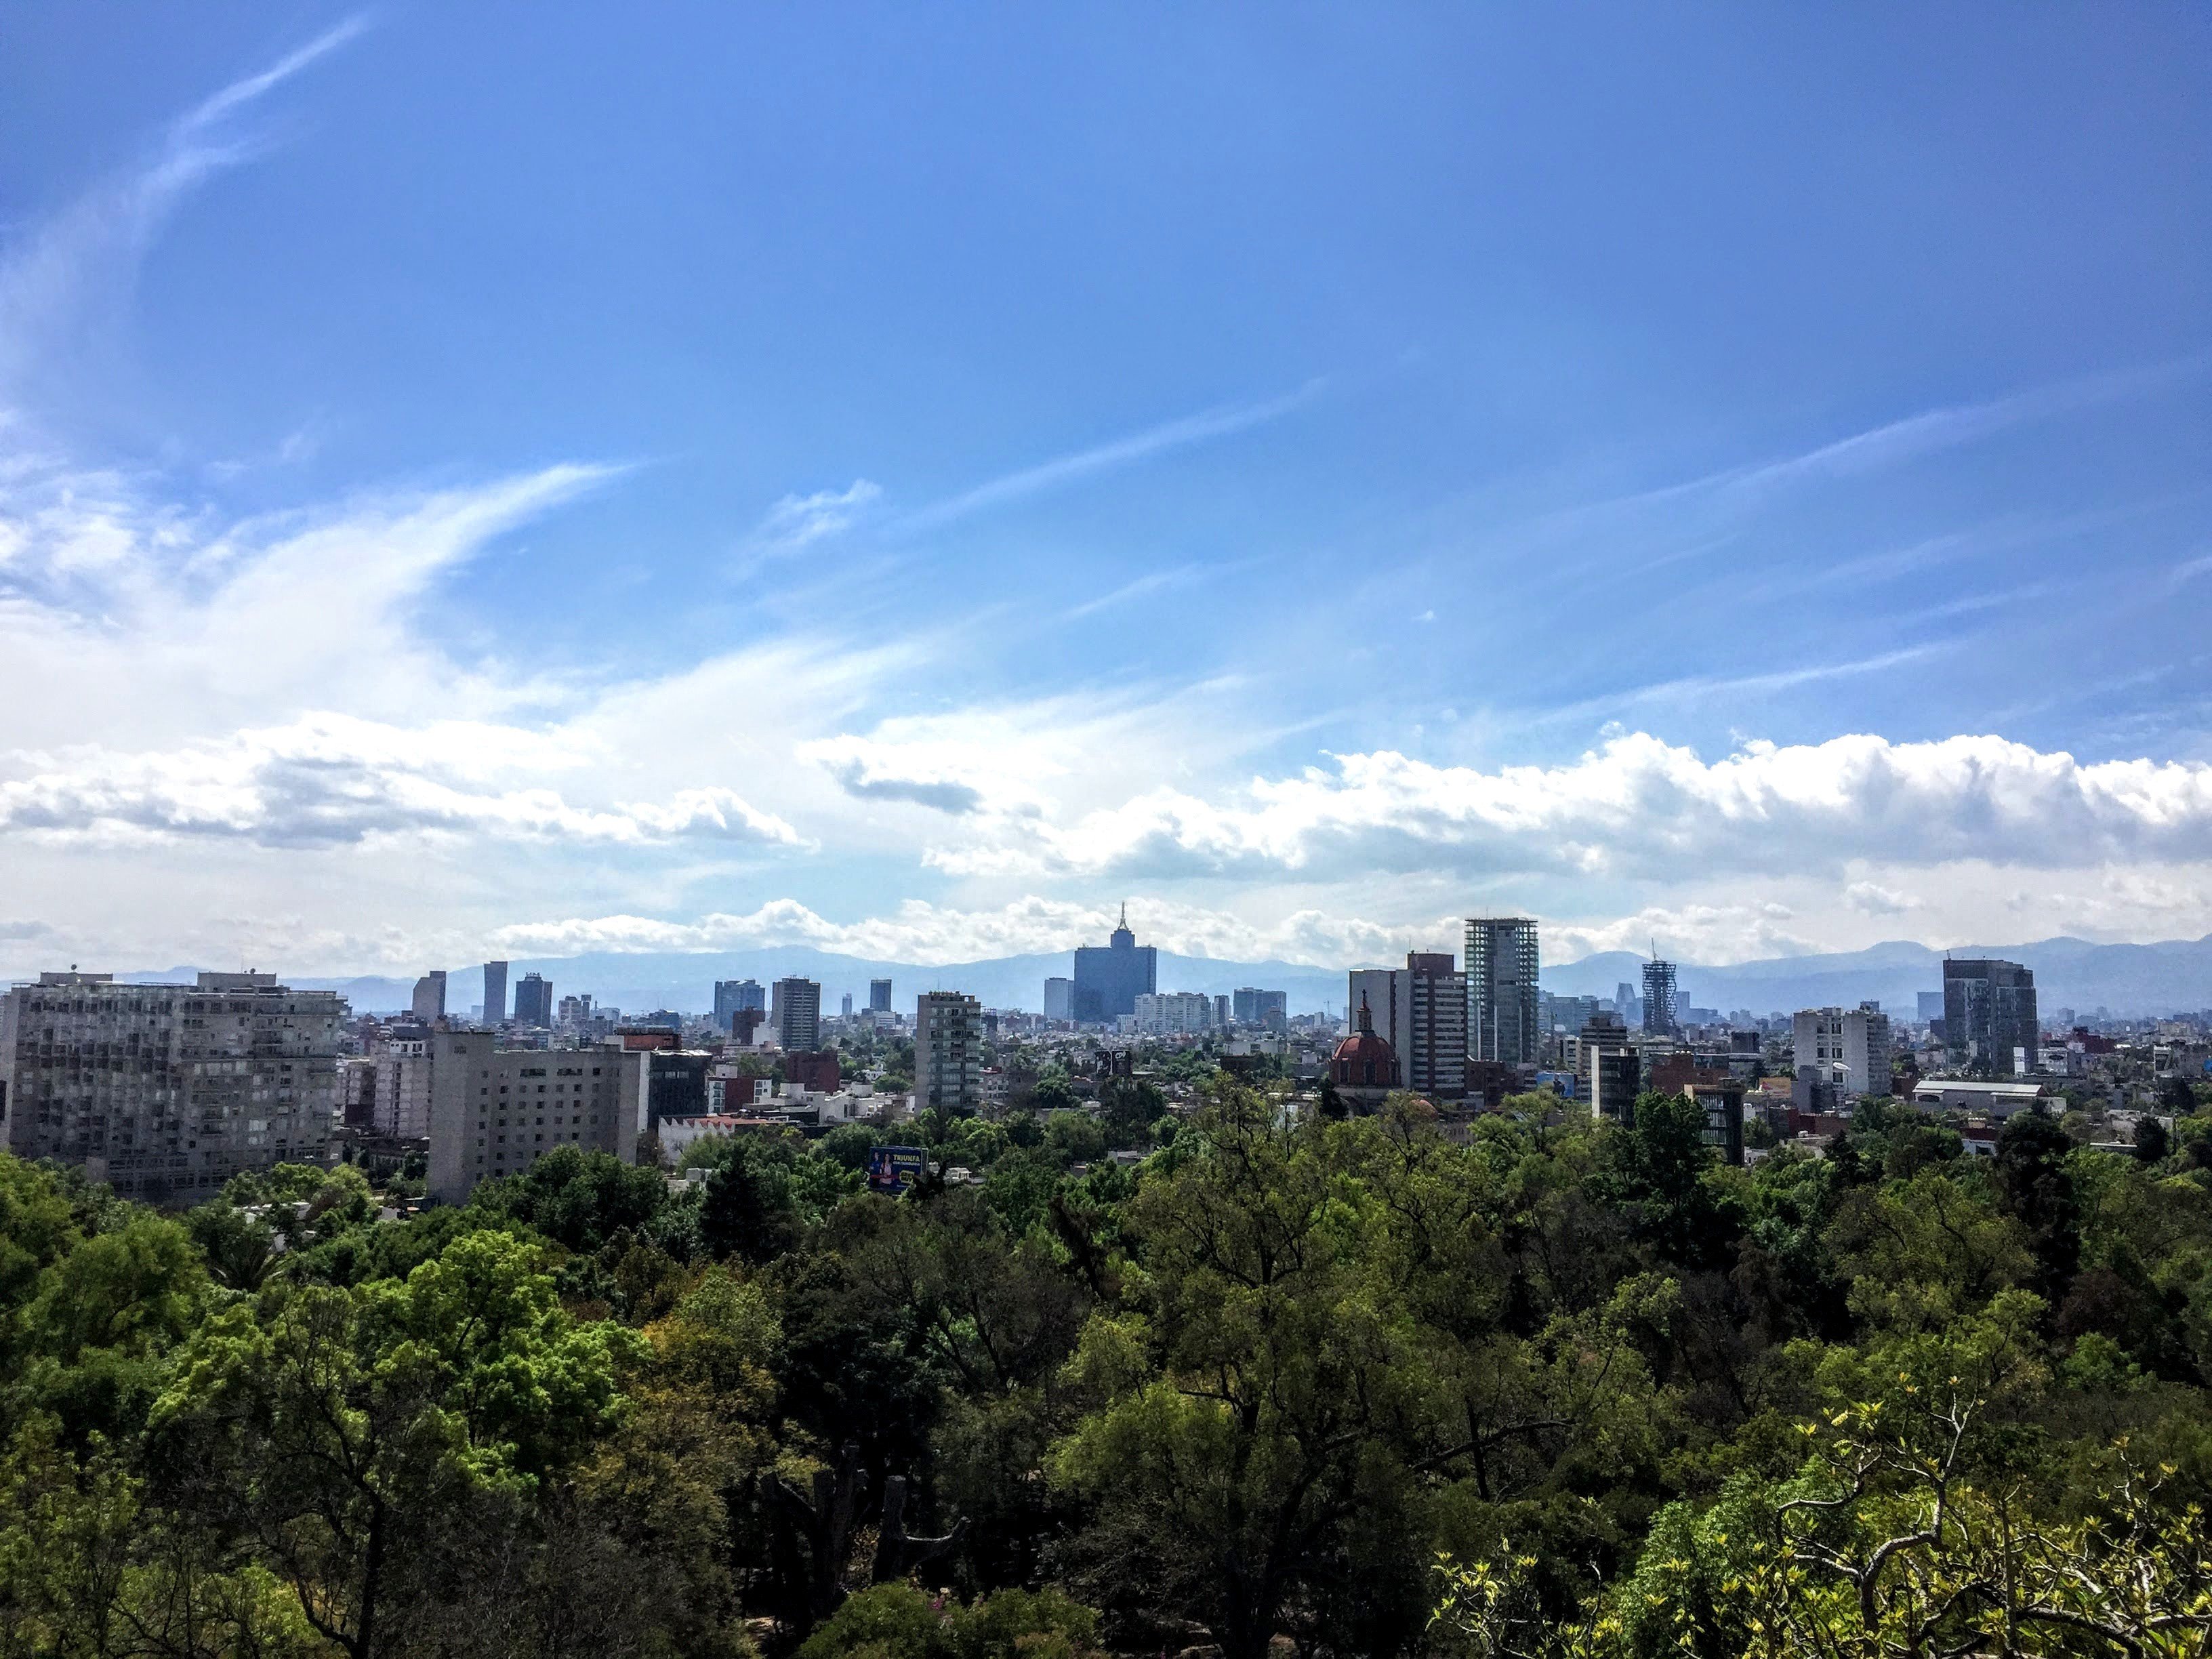 Chapultepec Park and Mexico City skyline